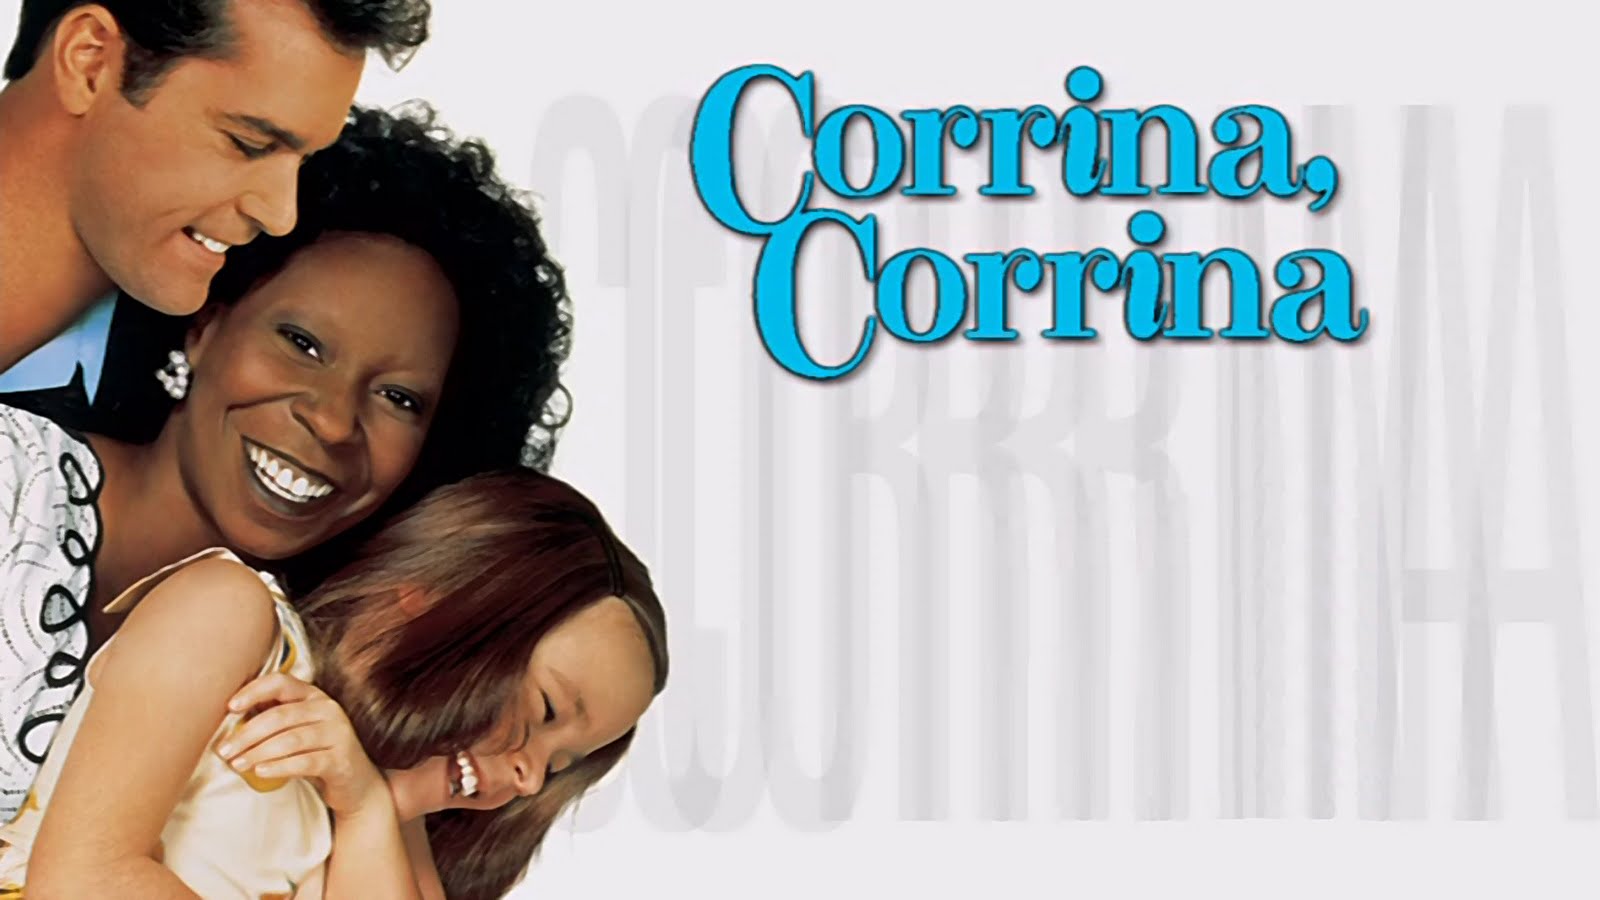 Corrina corrina youtube